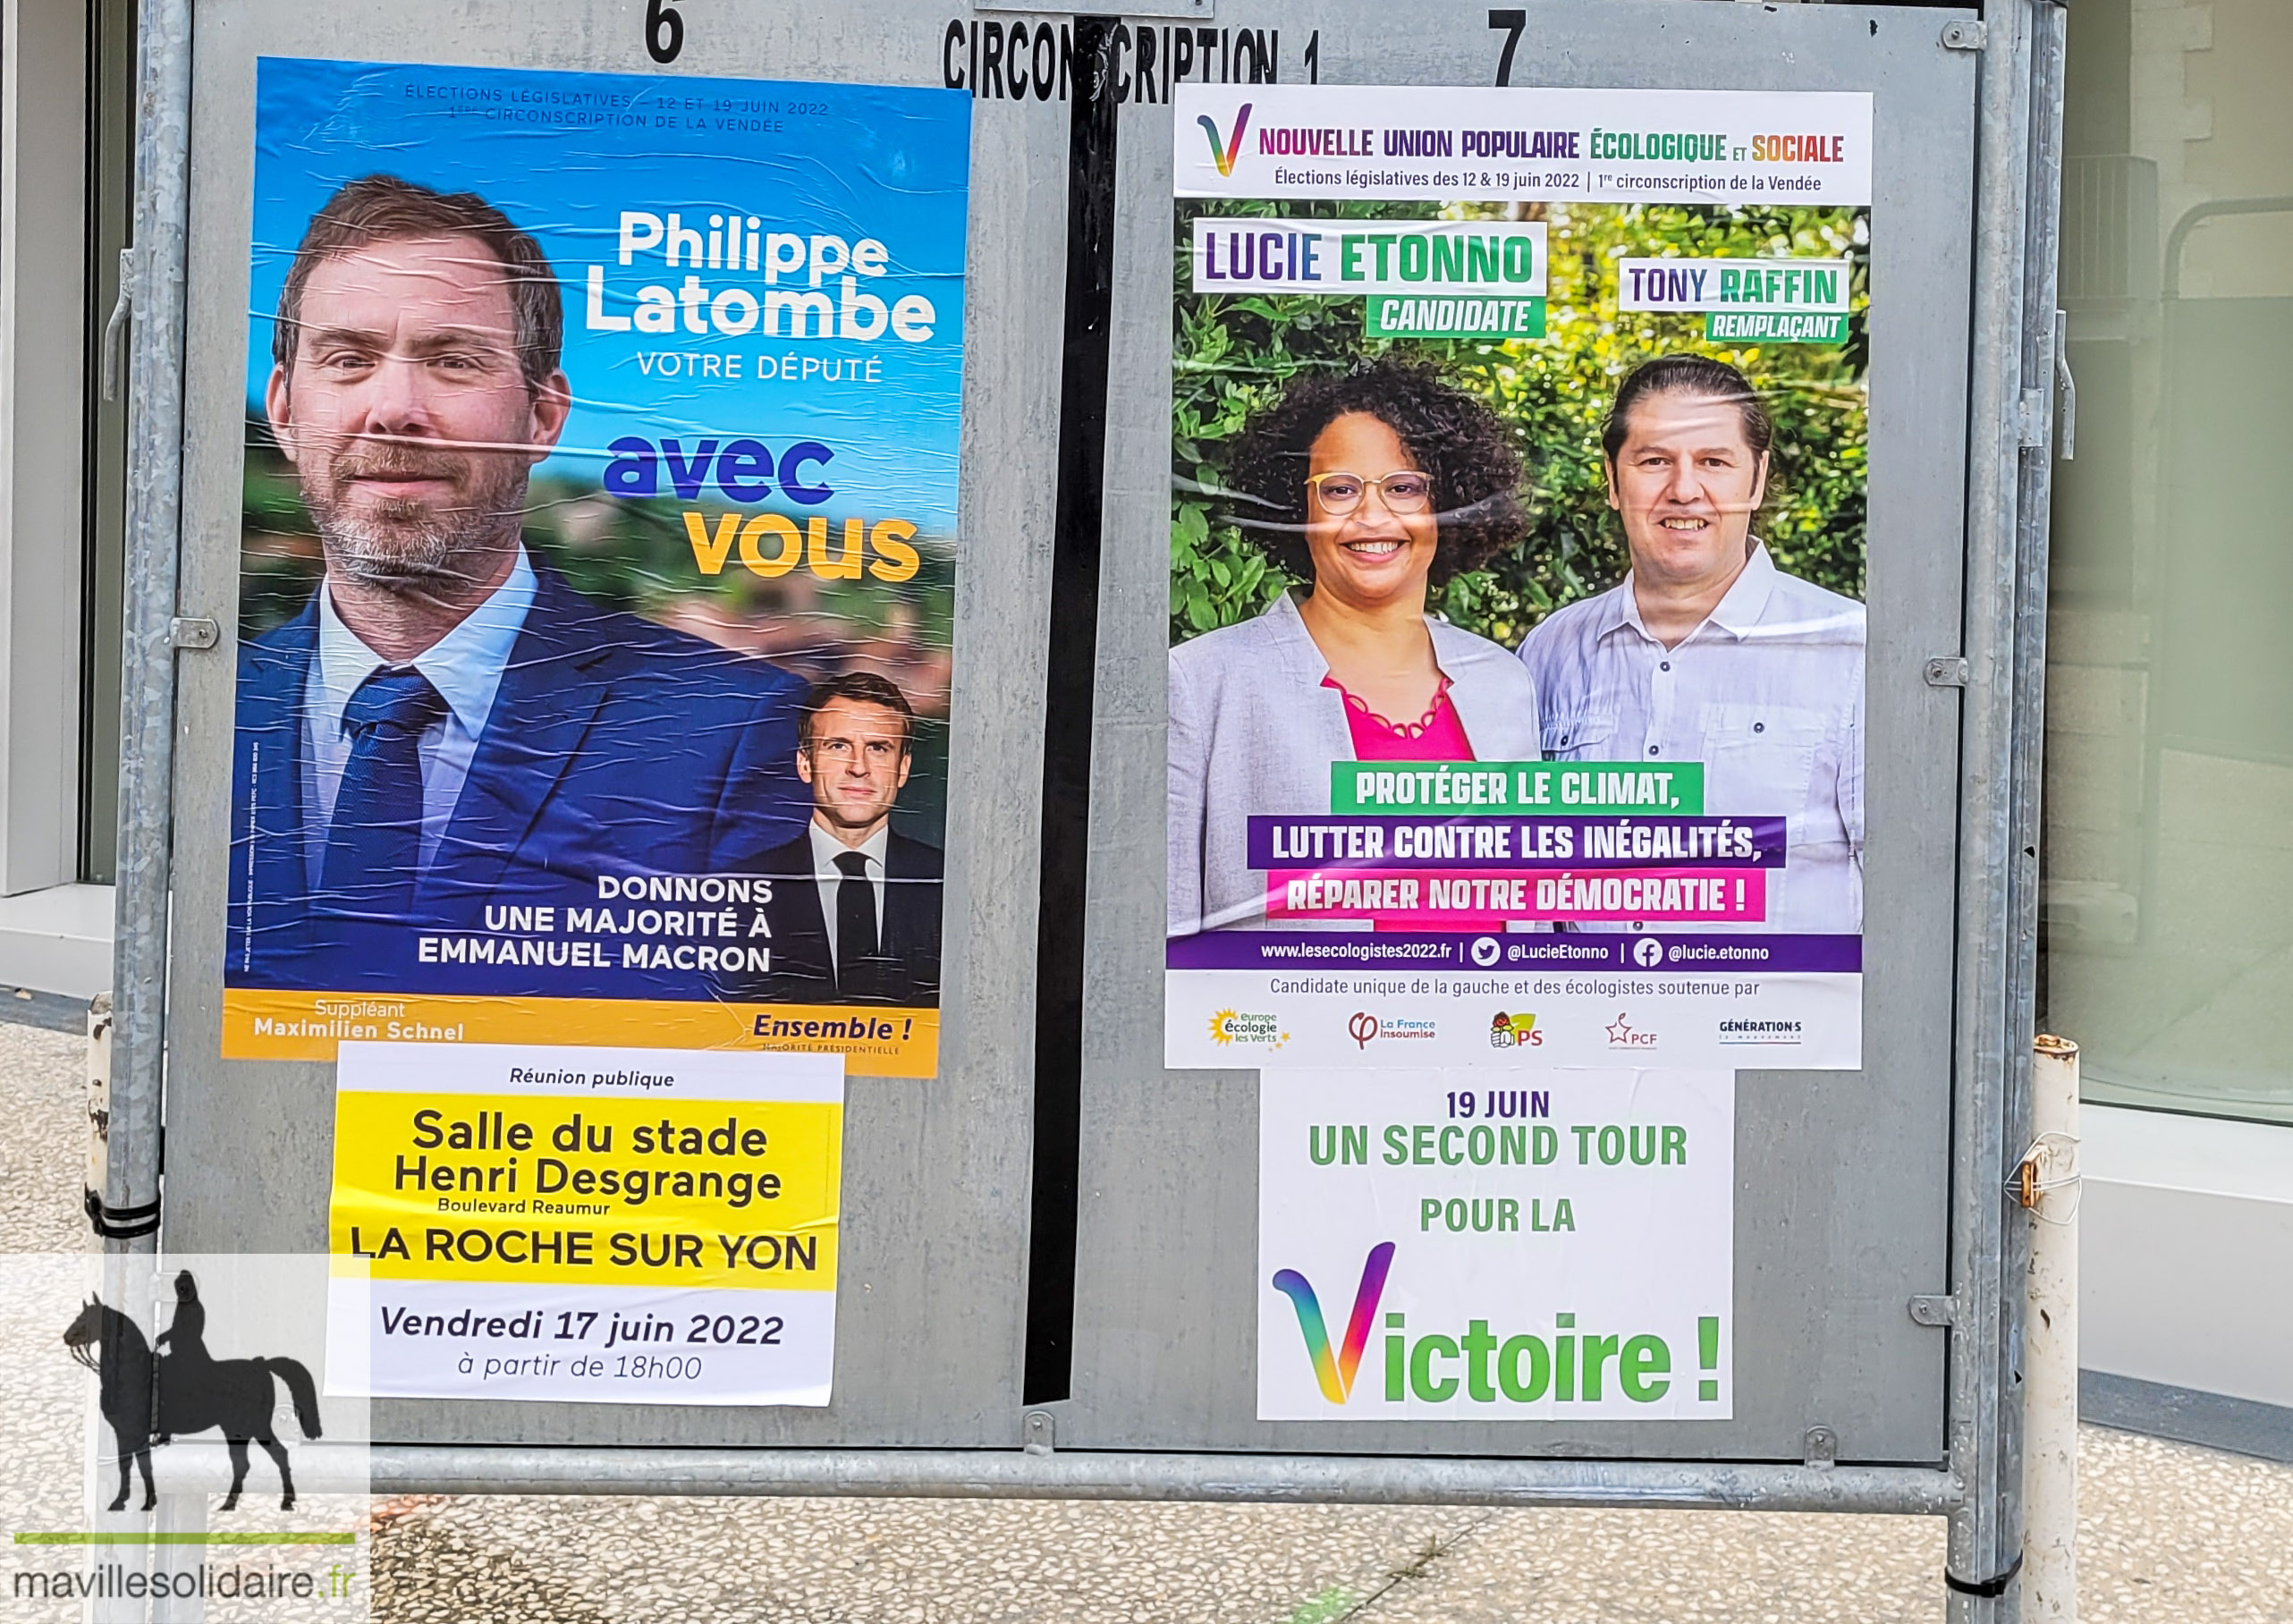 Législatives la Roche sur Yon mavillesolidaire.fr 2 sur 2